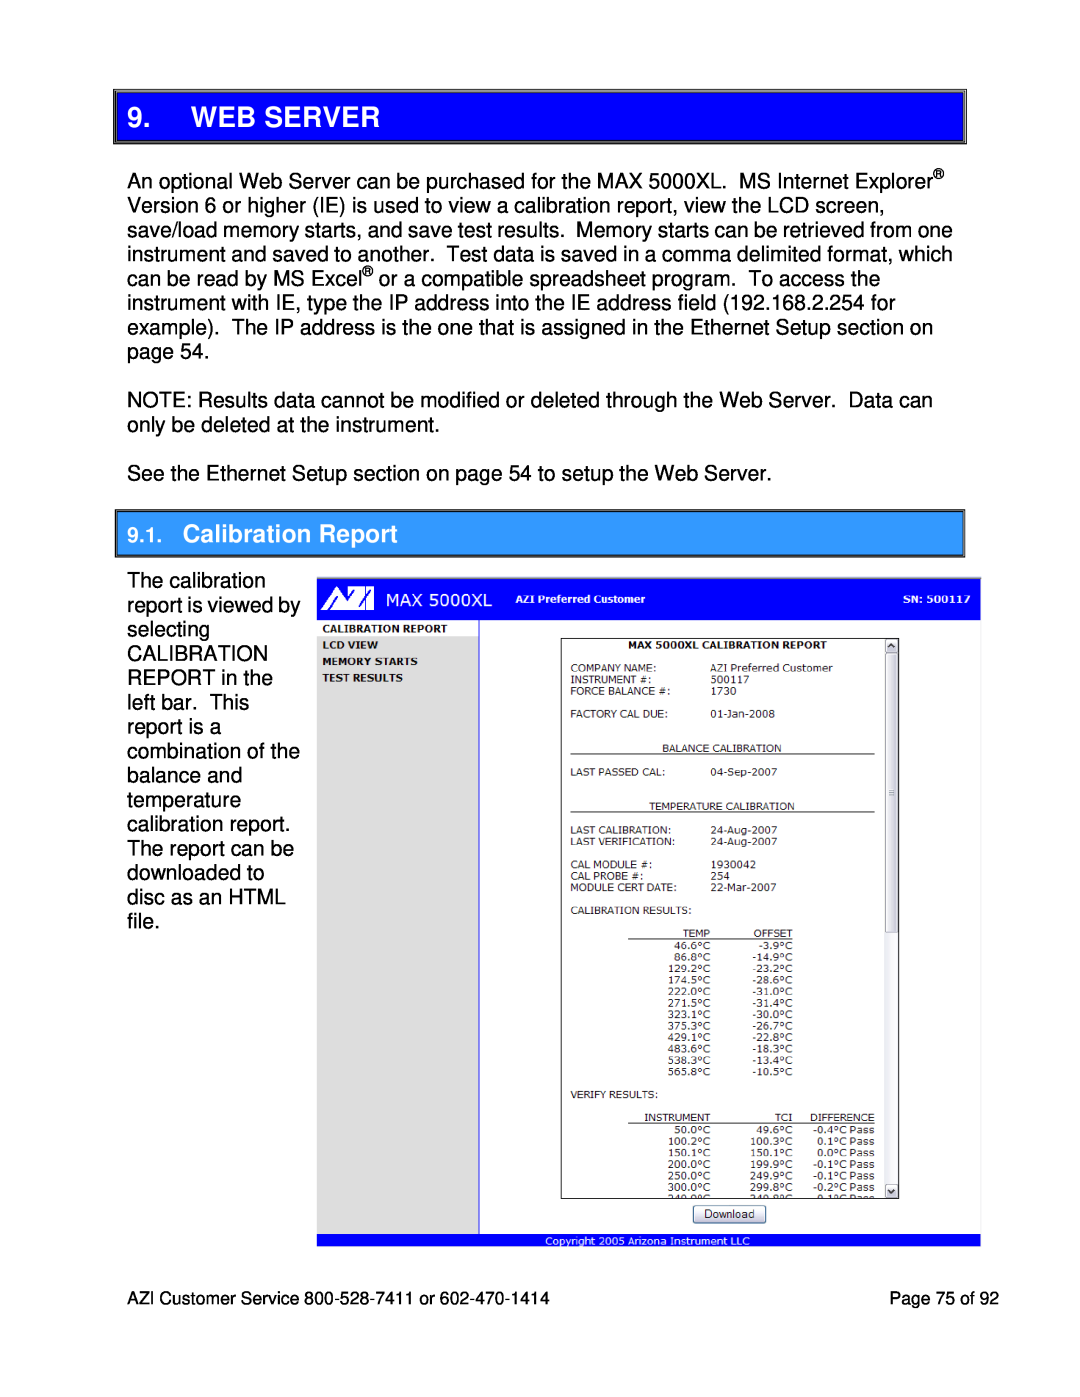 Arizona MAX-5000XL user manual Web Server, Calibration Report 